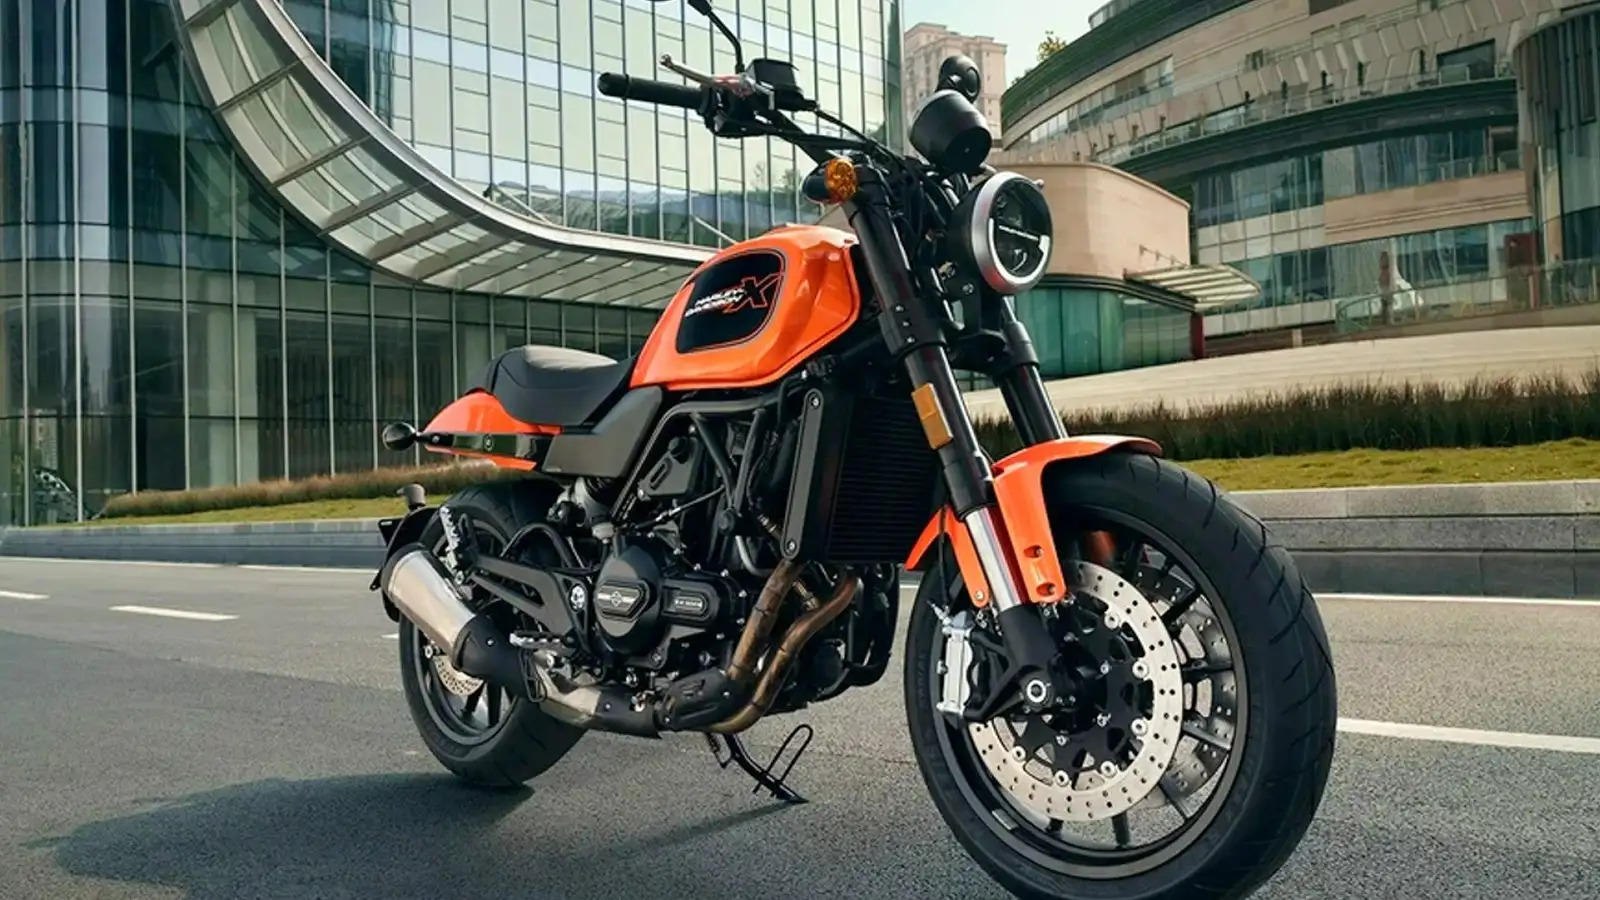 Harley-Davidson X 500 : 500cc इंजन और मस्कुलर लुक में Harley ला रही ये बाइक, देखें फीचर्स और कीमत 